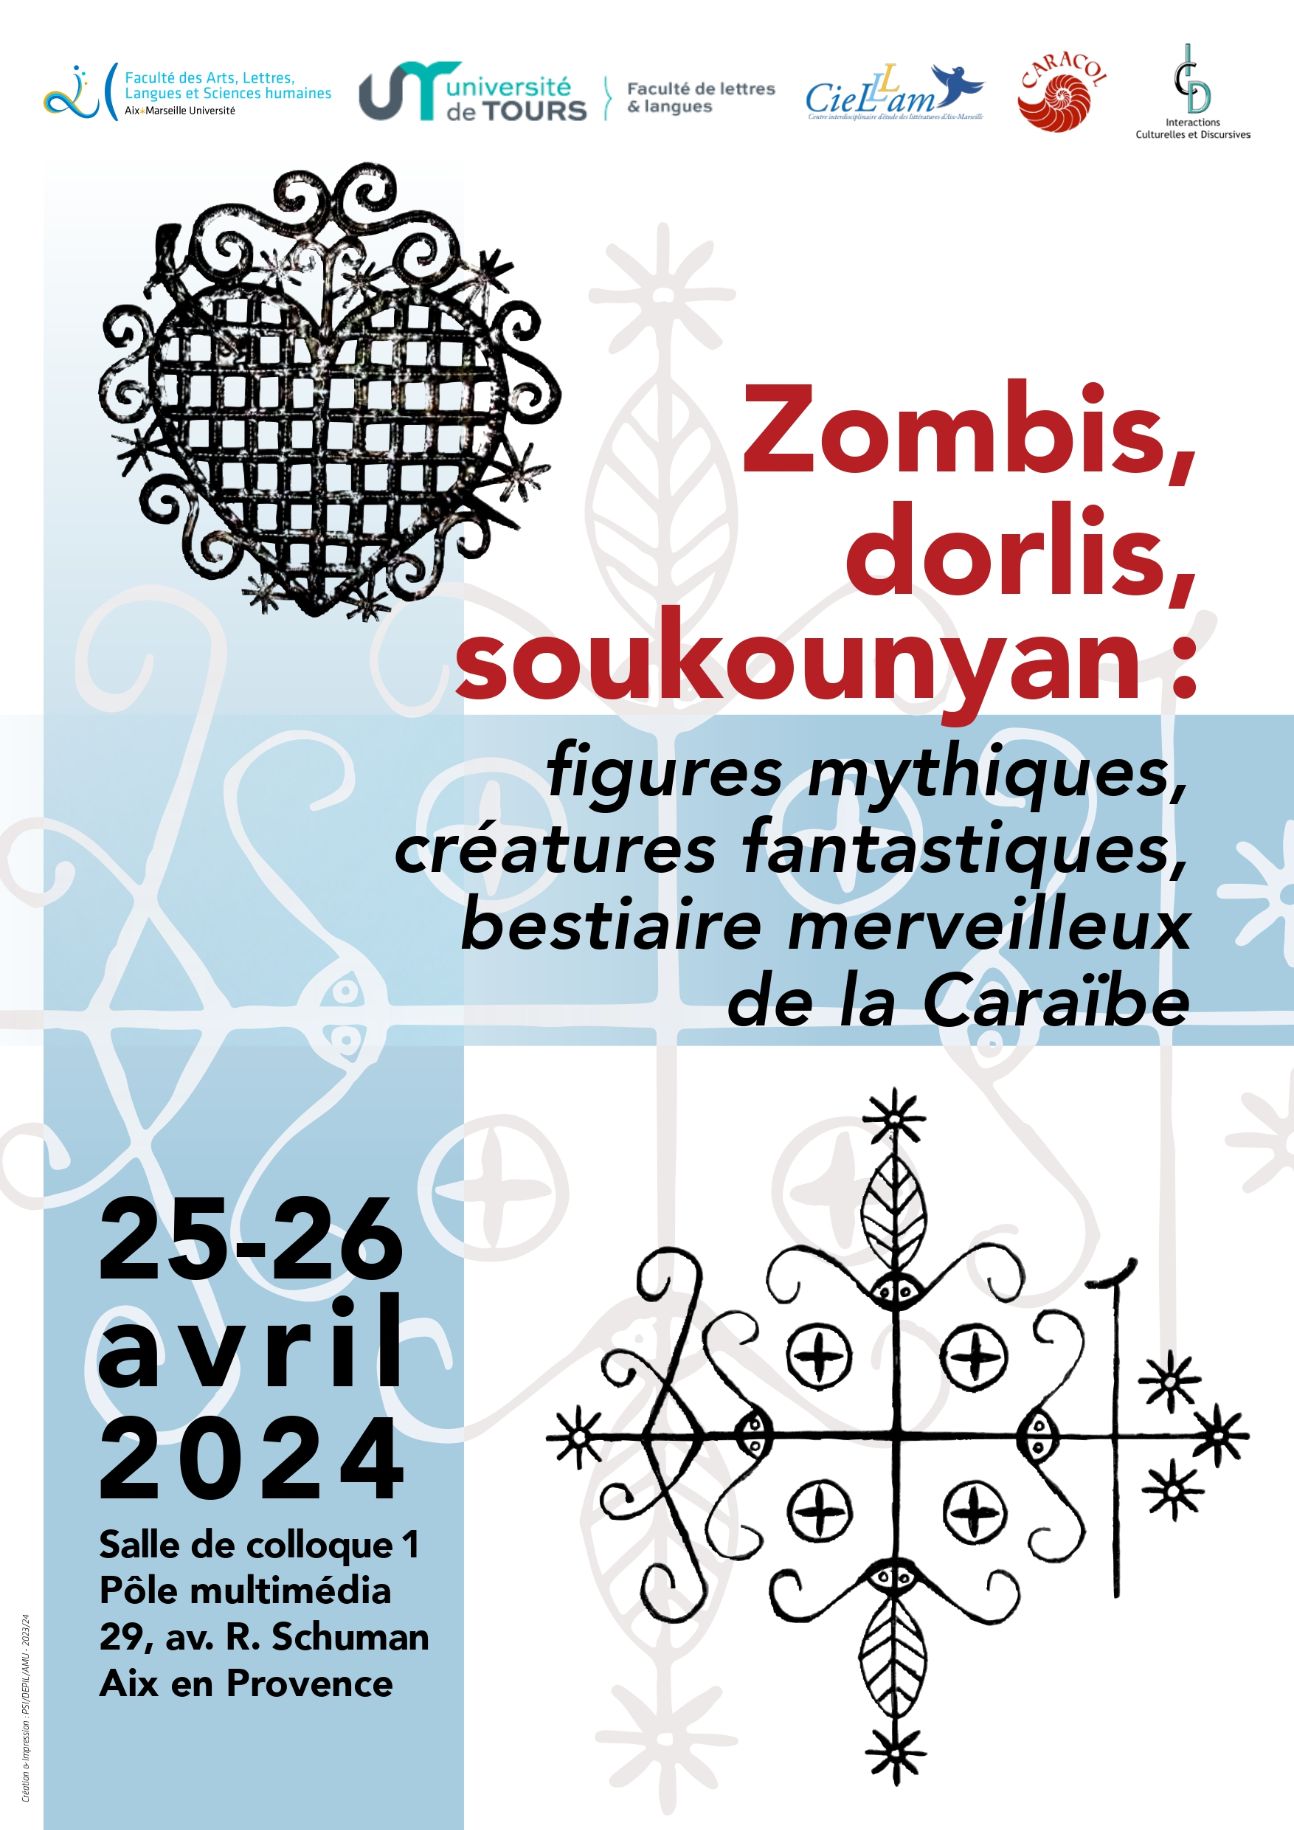 Zombis, dorlis, soukounyan : figures mythiques, créatures fantastiques, bestiaire merveilleux de la Caraïbe (Aix-en-Provence)